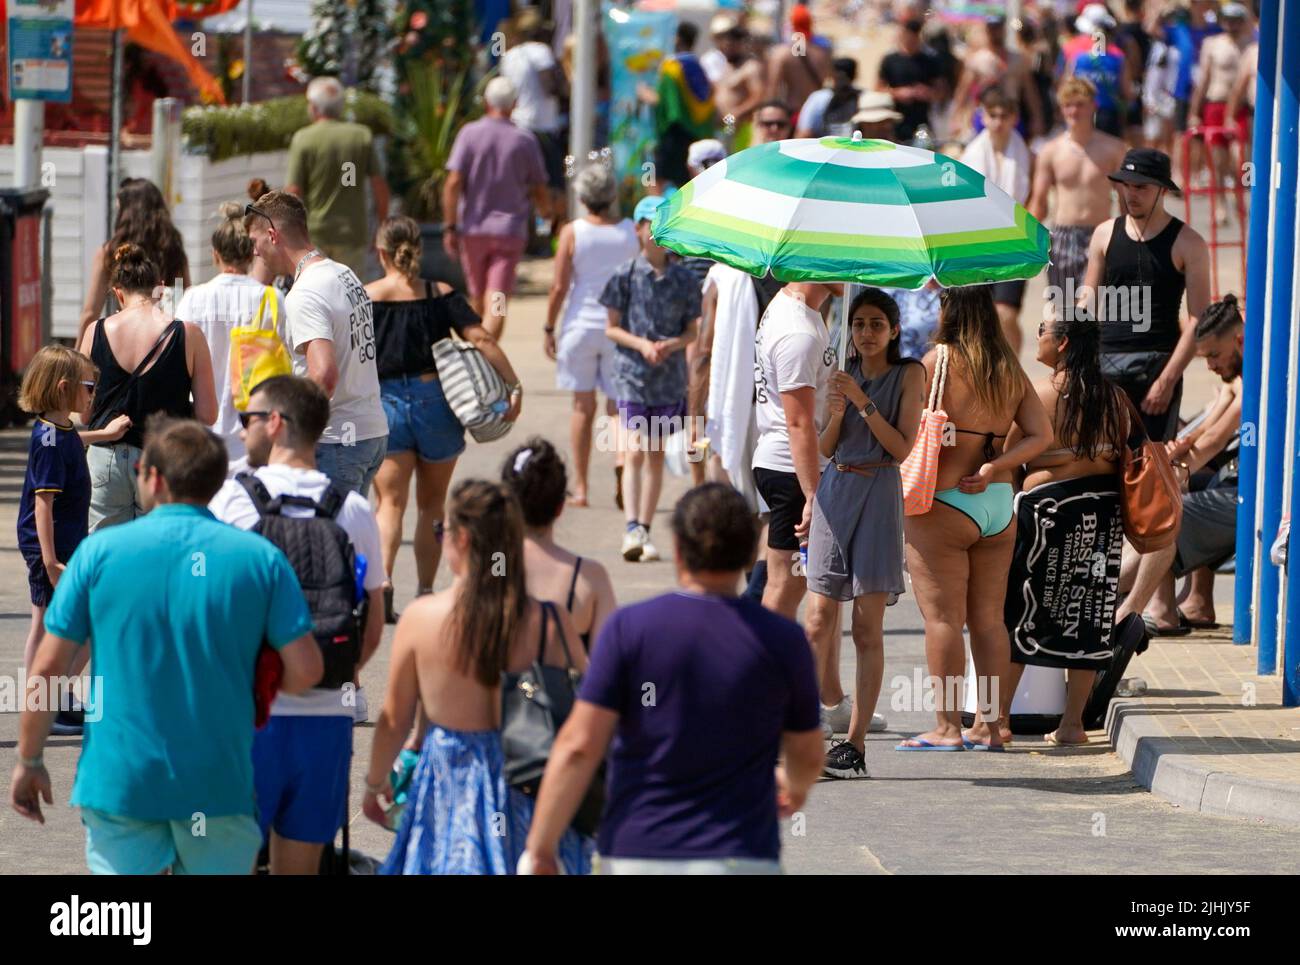 Les gens marchent le long de la promenade près de la plage à Bournemouth. Les Britanniques sont sur le point de fondre le jour le plus chaud jamais enregistré au Royaume-Uni alors que les températures devraient atteindre 40C. Date de la photo: Mardi 19 juillet 2022. Banque D'Images